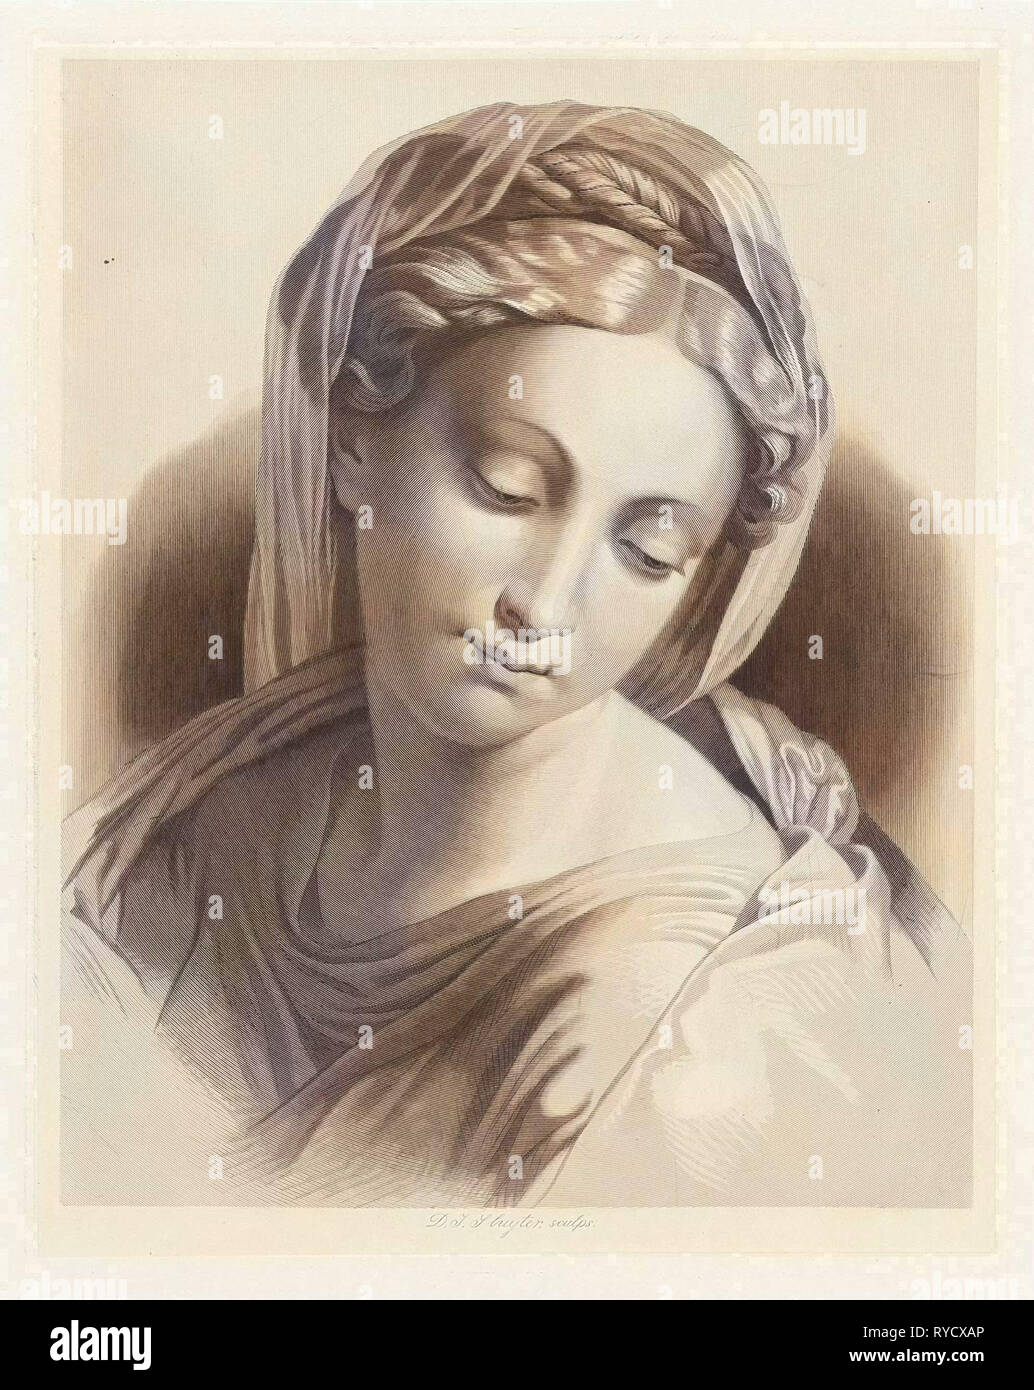 Madonna, impresión de folletos: Dirk Jurriaan Sluyter, 1826 - 1886 Foto de stock